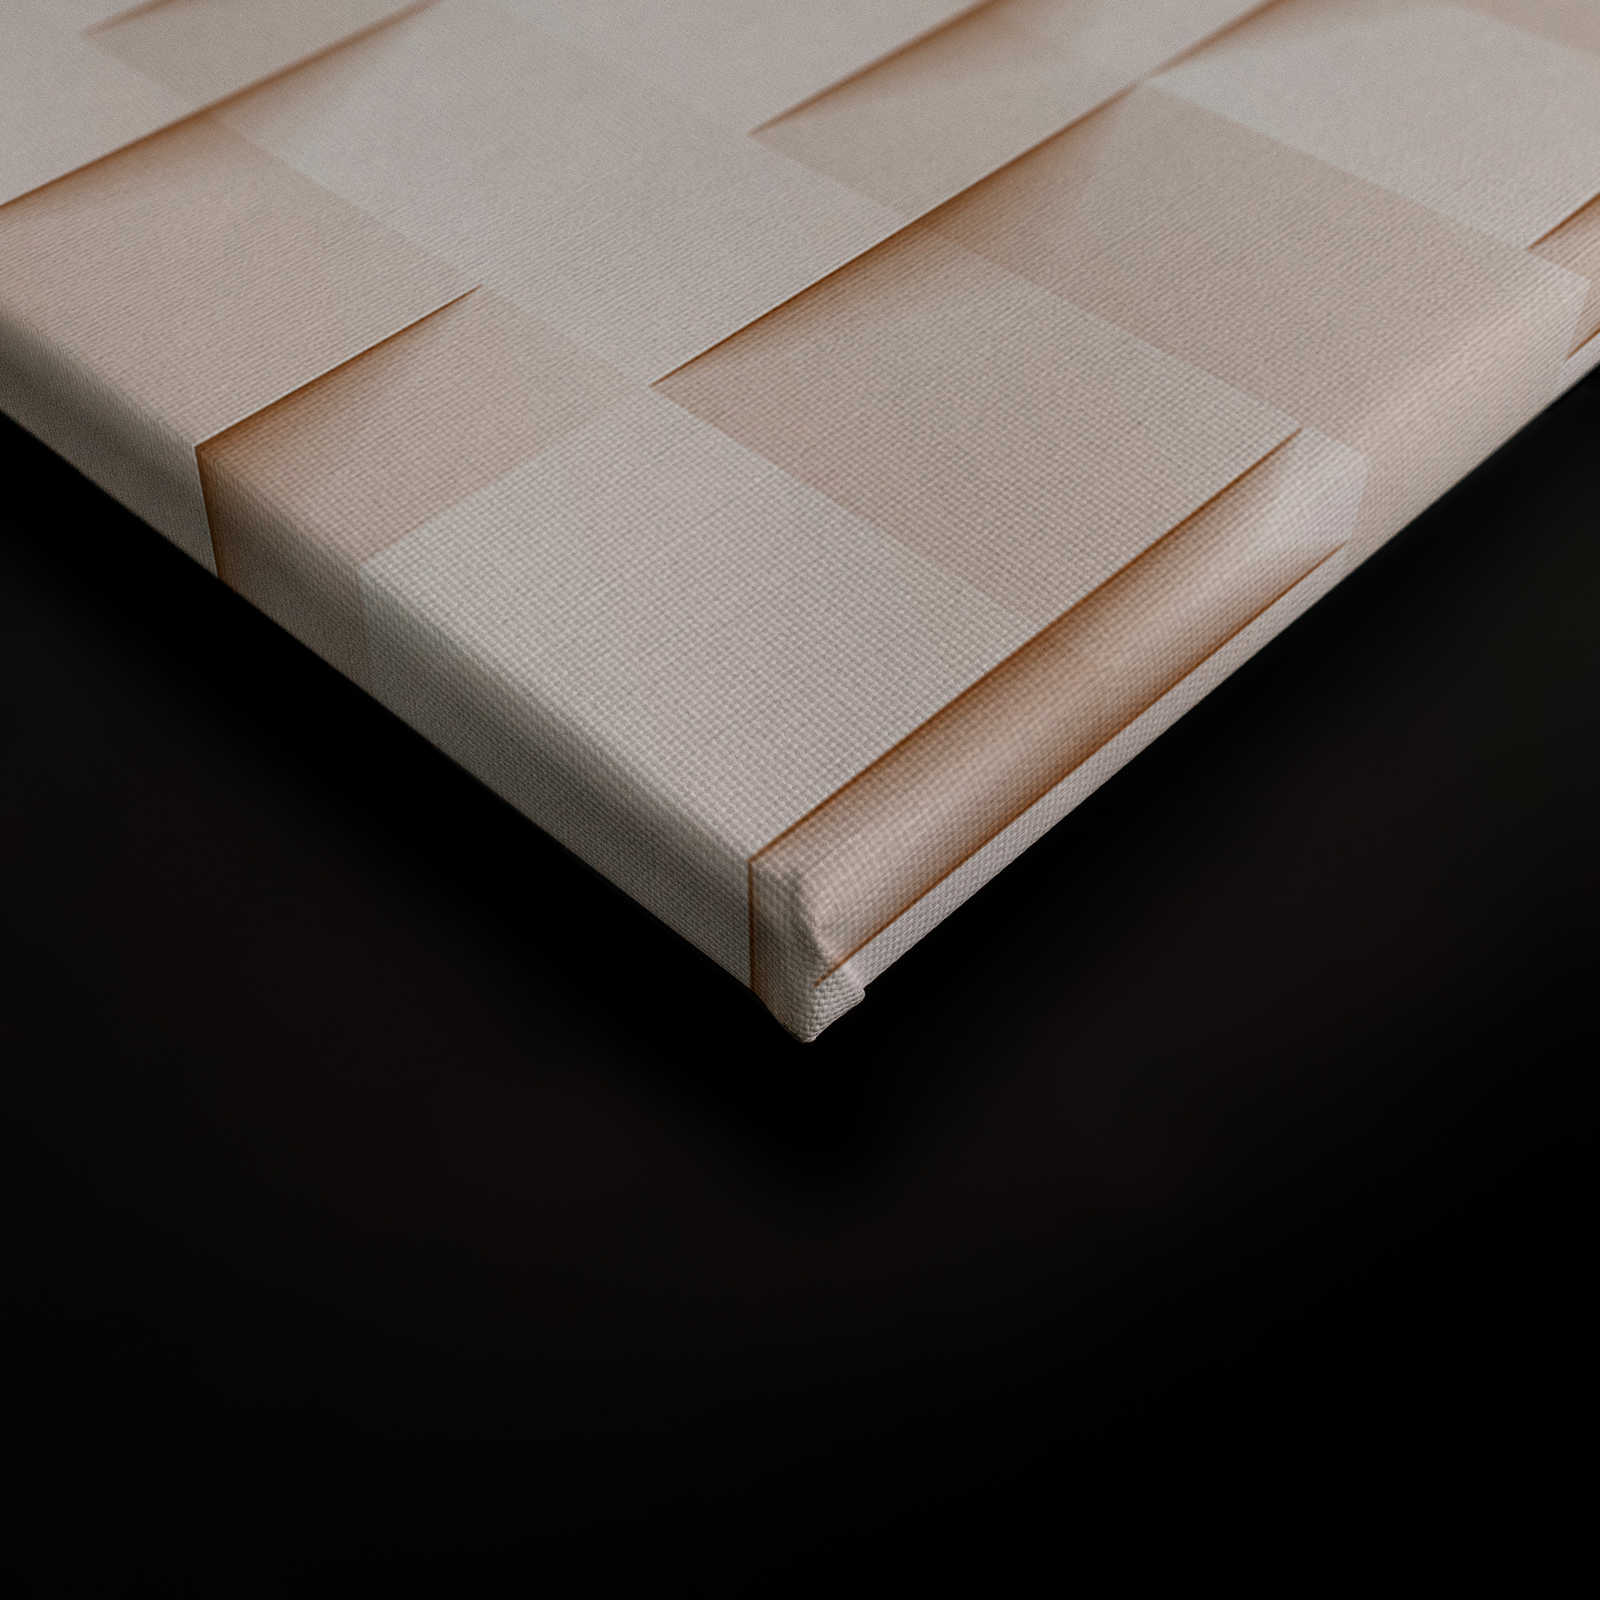             Paper House 1 - Canvas schilderij 3D structuur papier origami vouwen - 1.20 m x 0.80 m
        